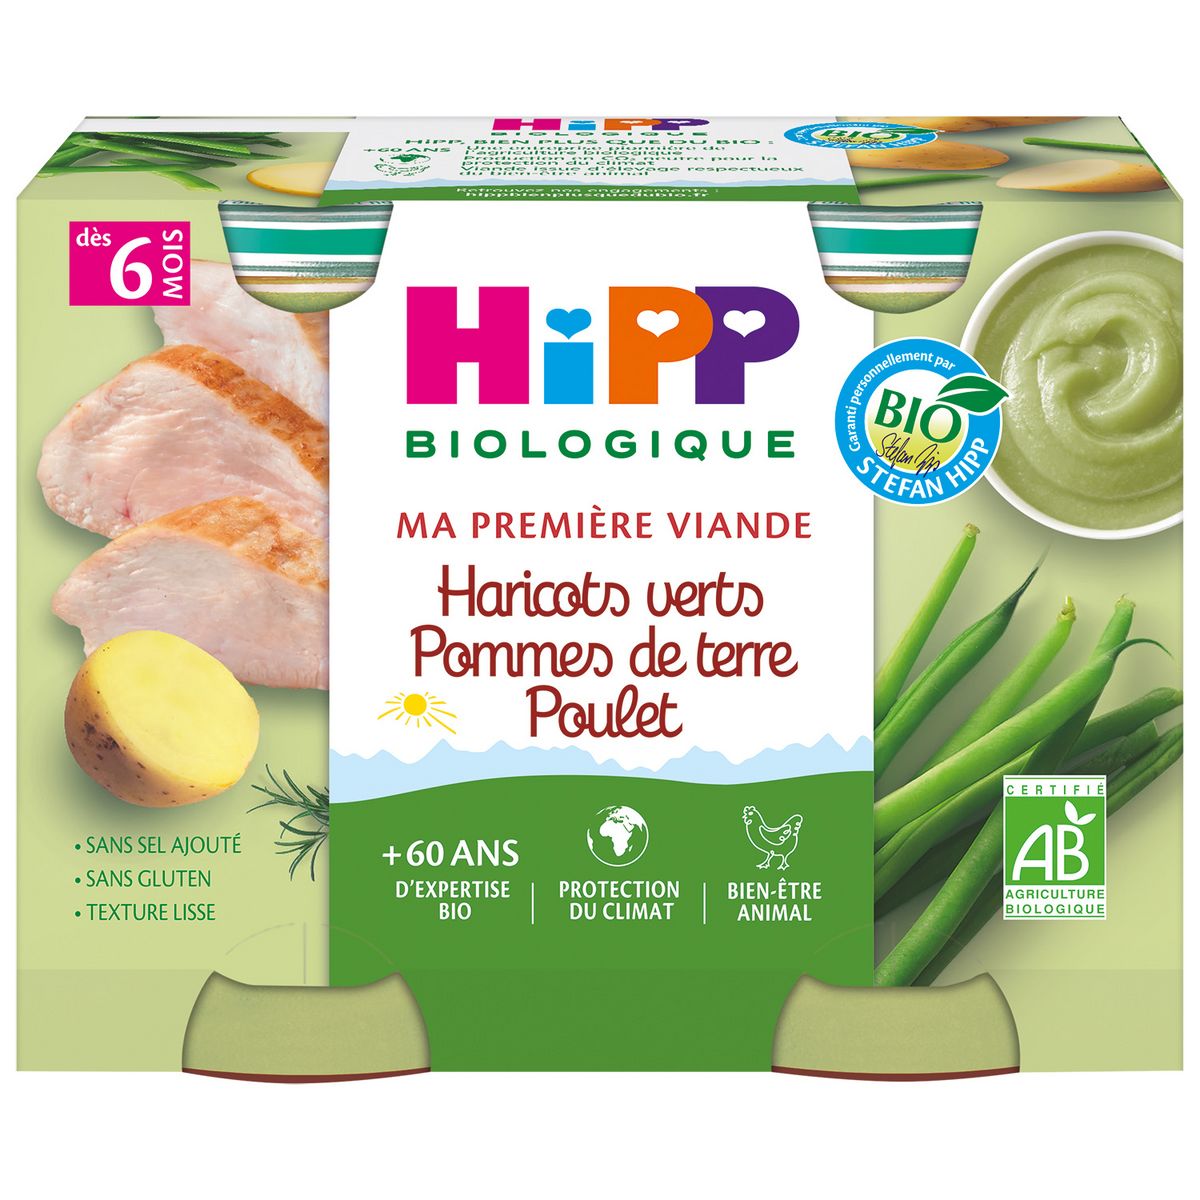 HIPP Petit pot haricots verts pommes de terre poulet bio dès 6 mois 2x190g